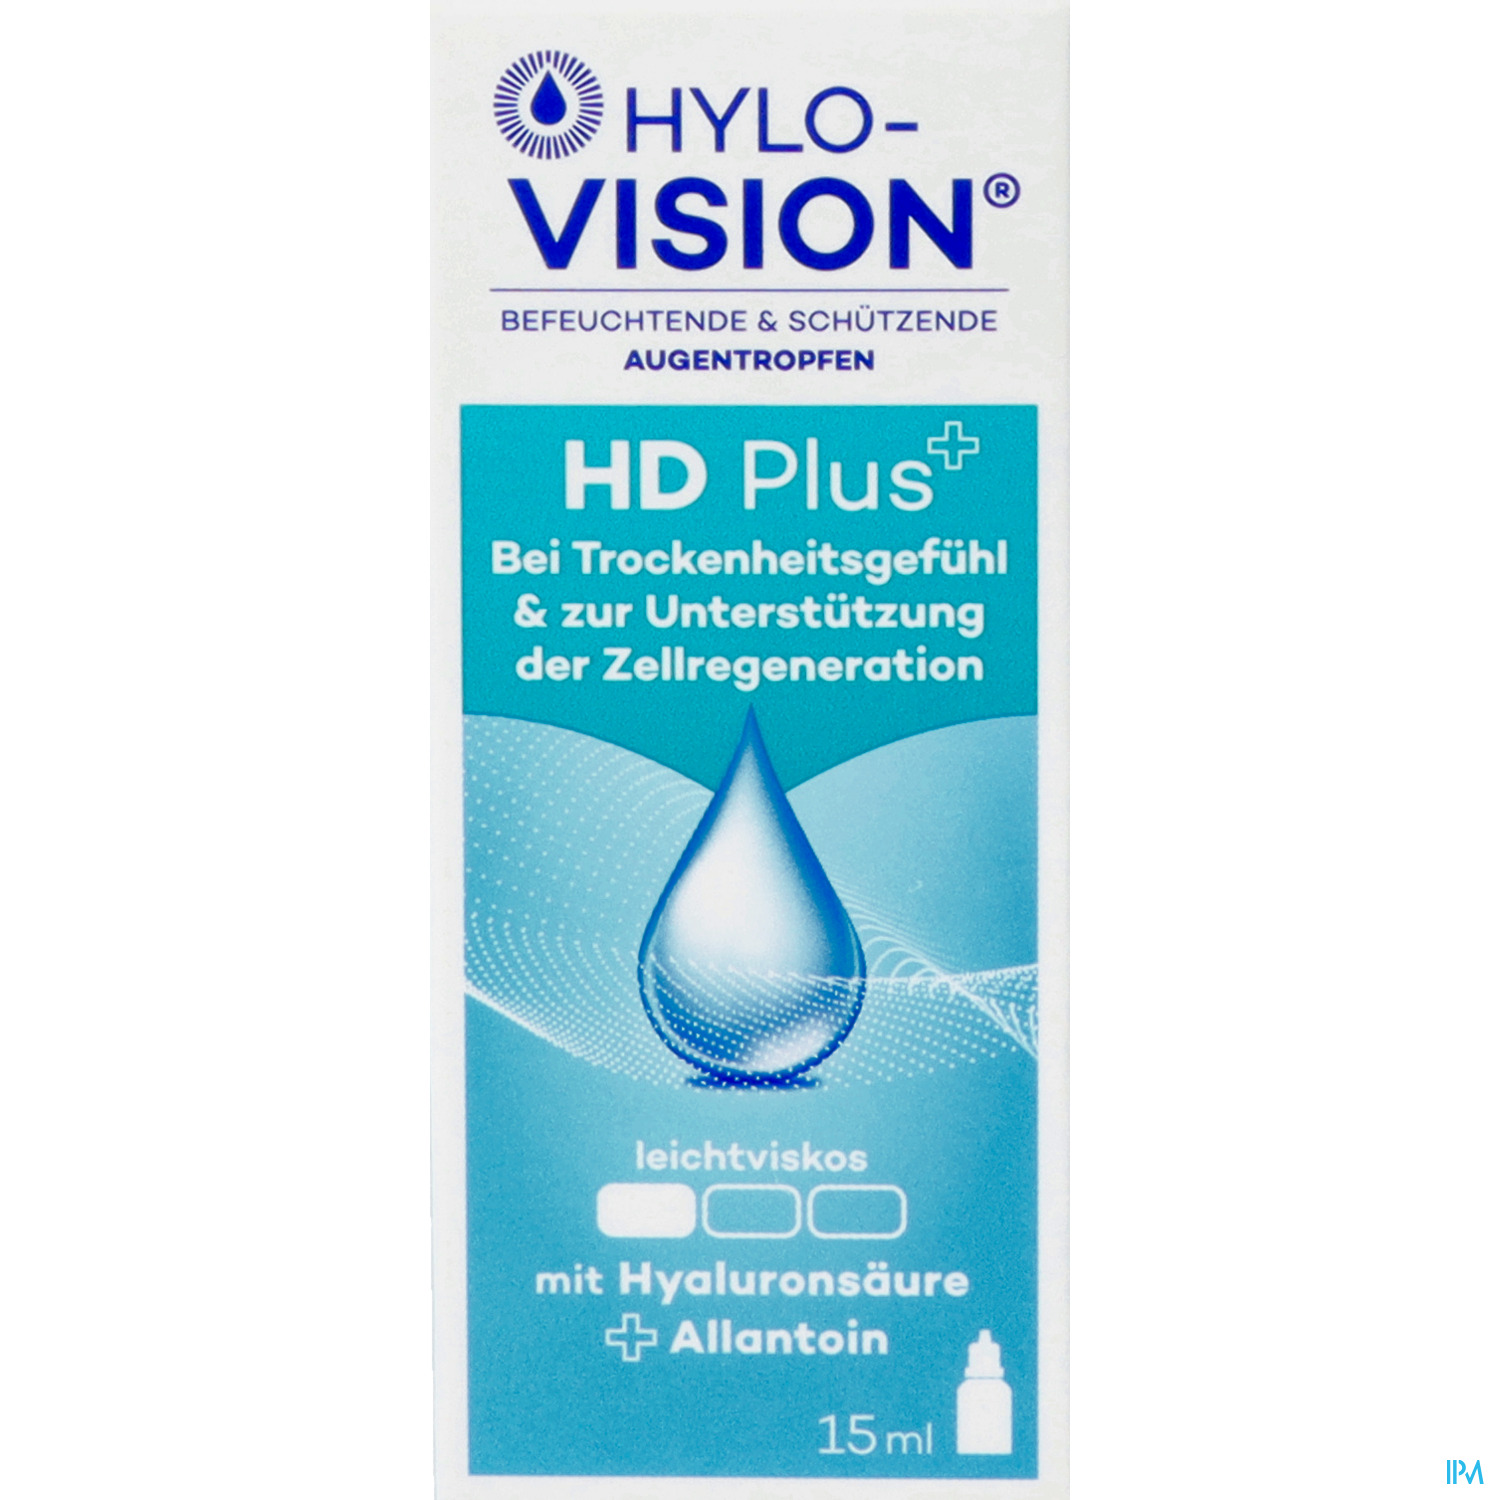 HYLO-VISION AU-TR HD PLUS AT 15ML